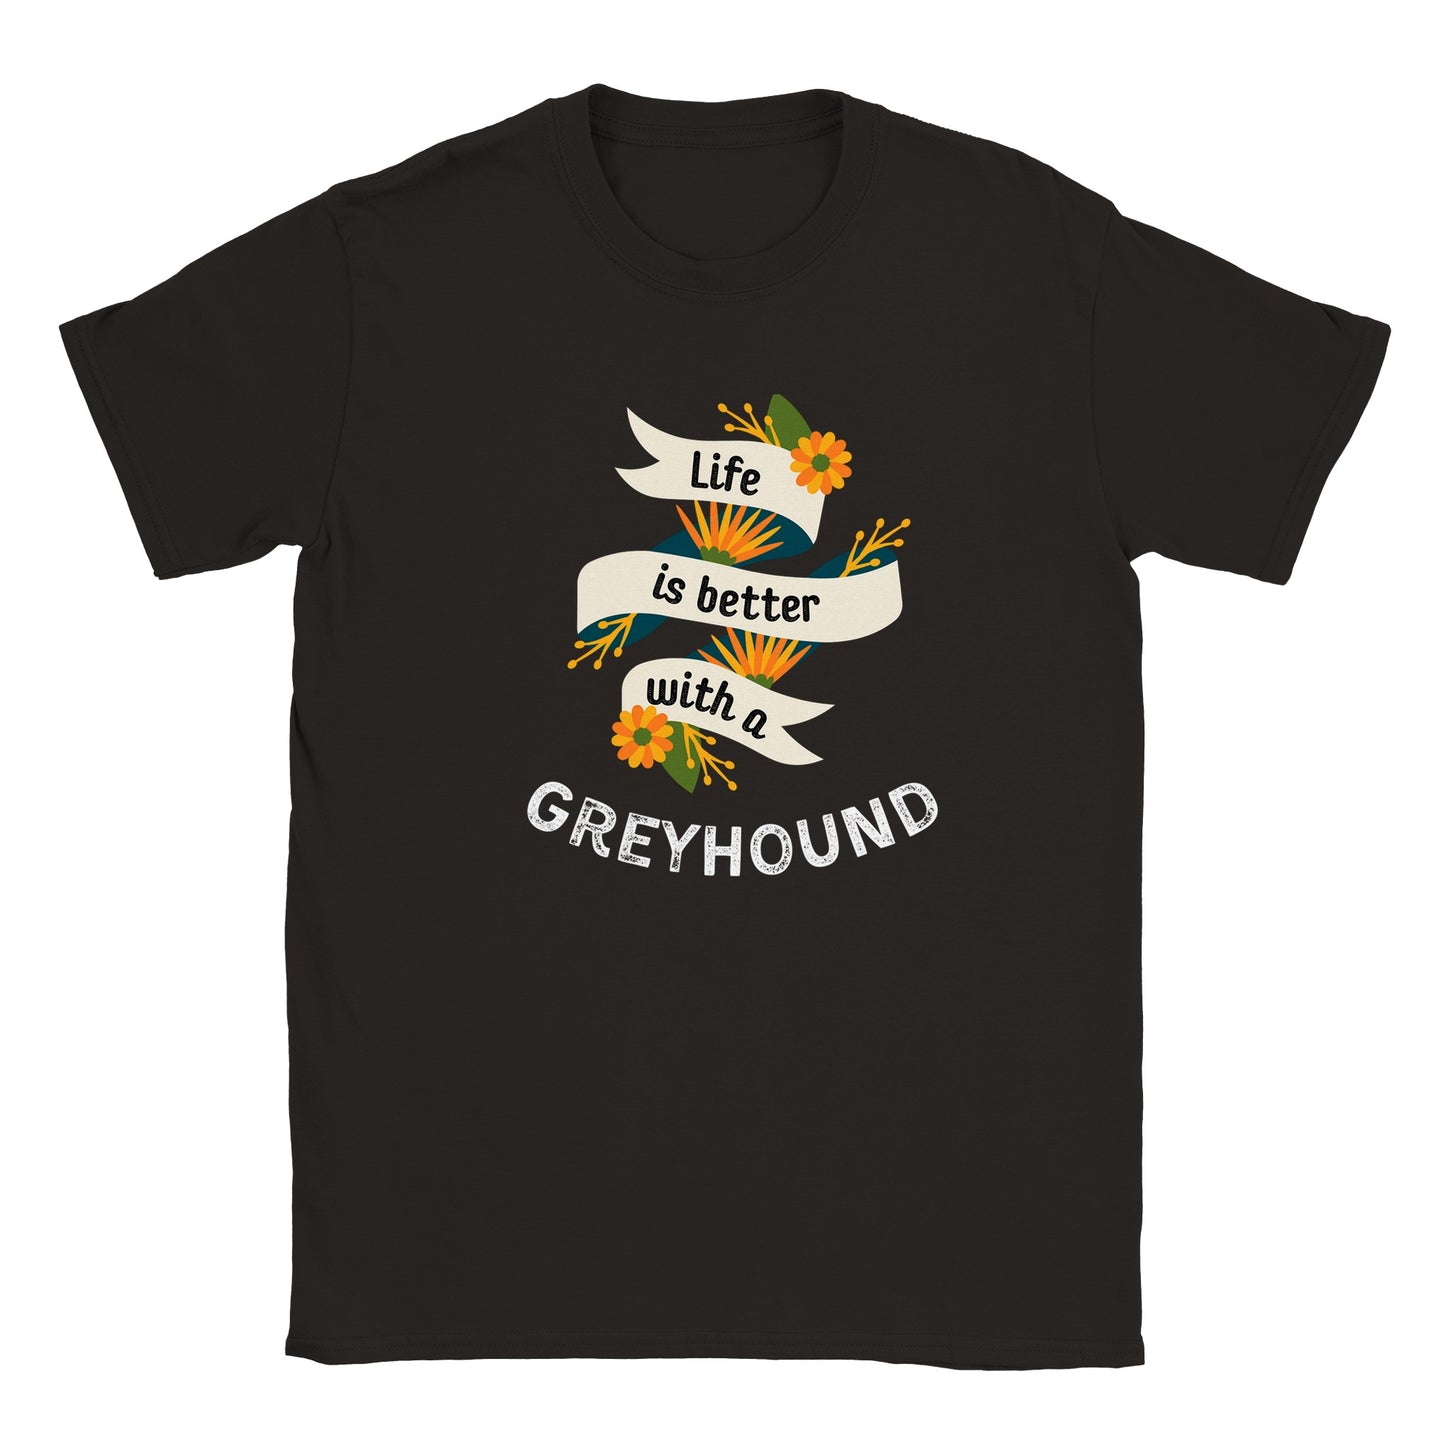 Greyhound Life Crewneck T-shirt